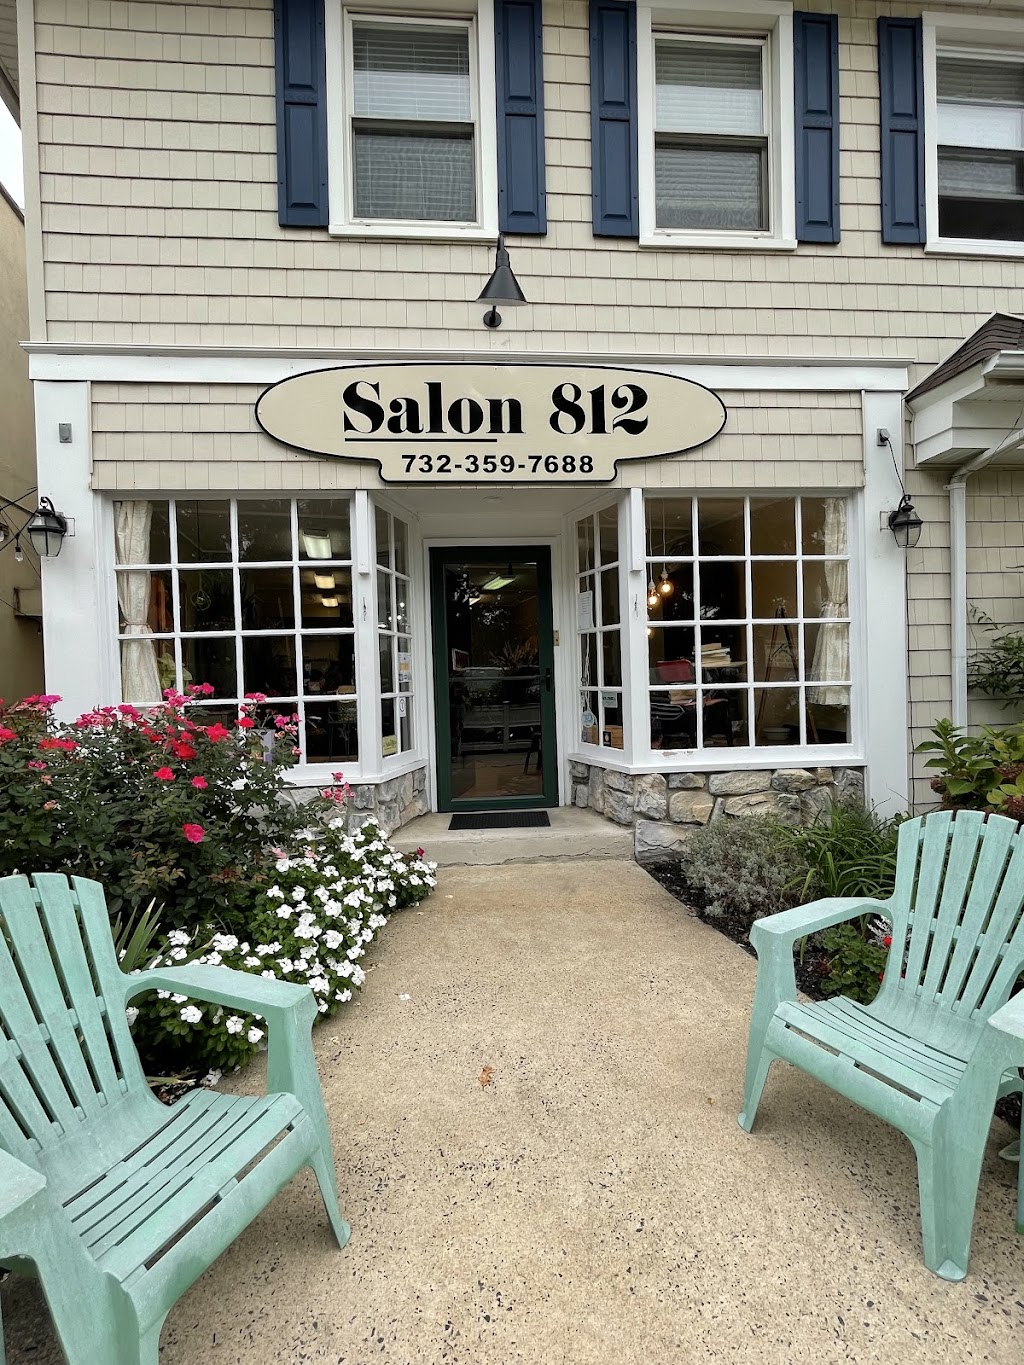 Salon 812 for Hair and Etc. | 812 The Plaza, Sea Girt, NJ 08750 | Phone: (732) 359-7688